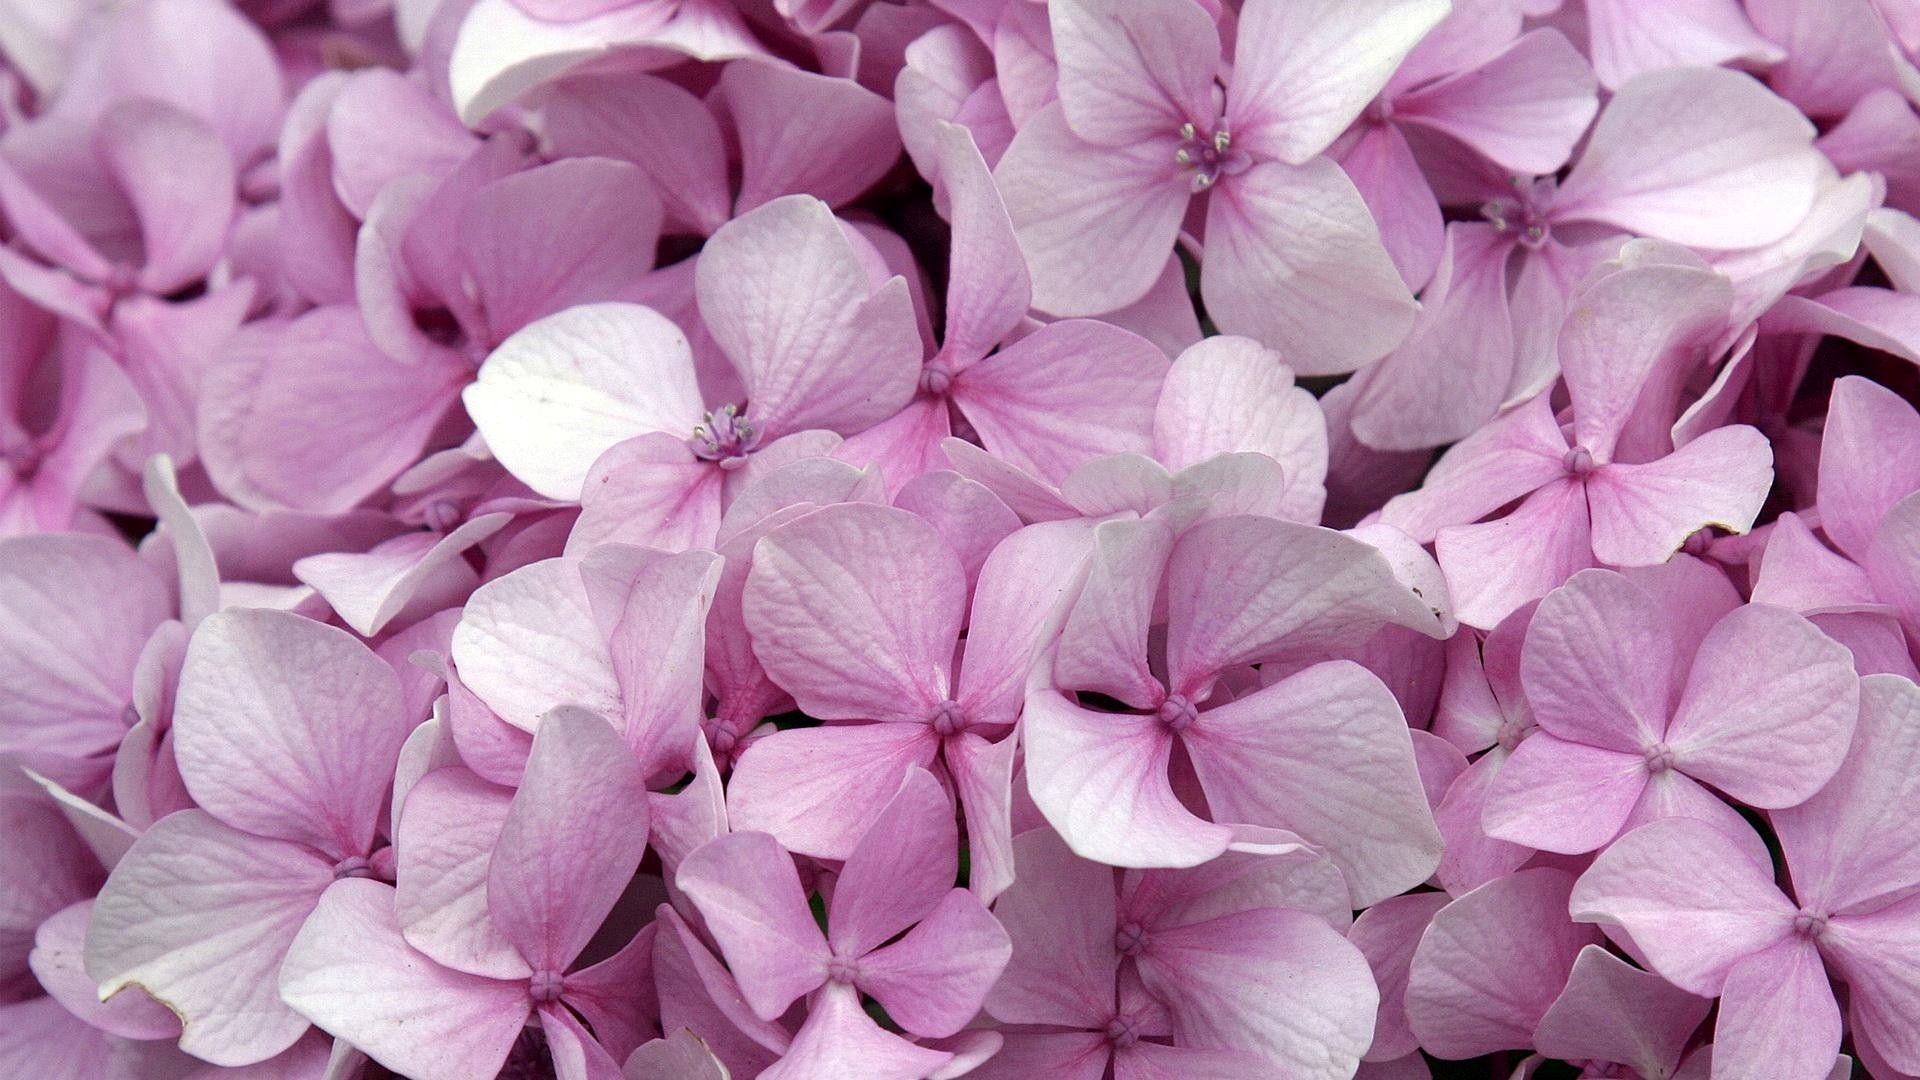 Pink Hydrangea Flowers